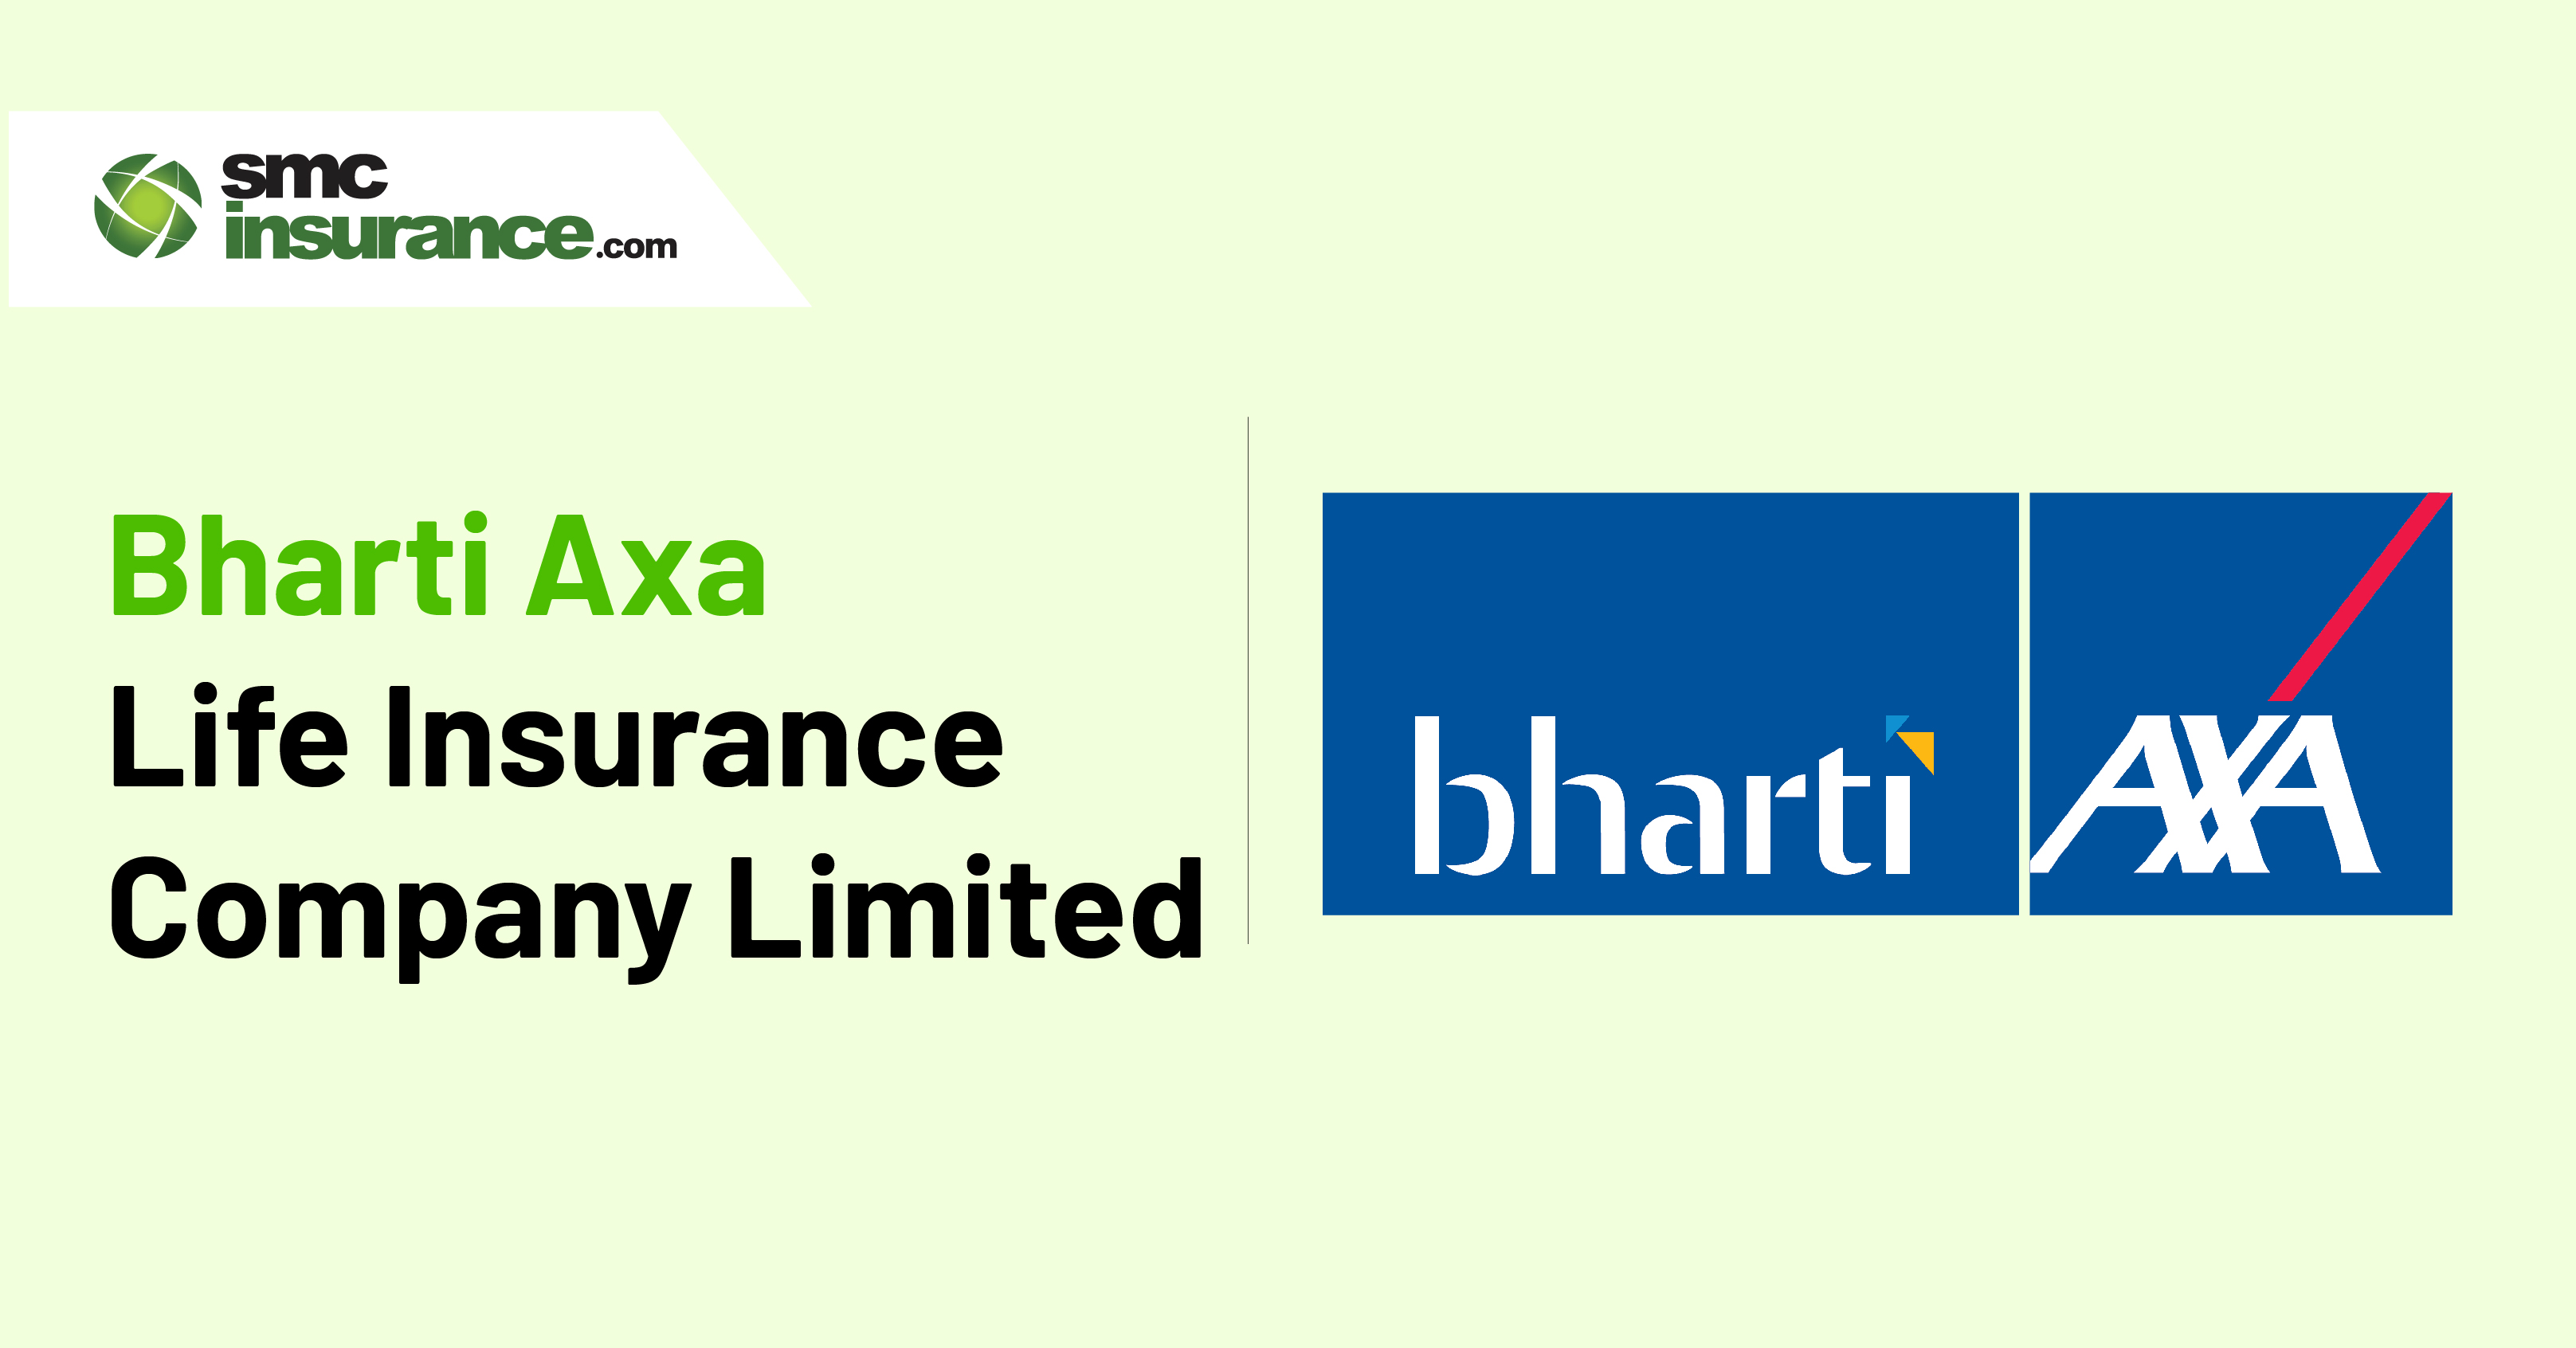 Bharti Axa Life Insurance Company Limited